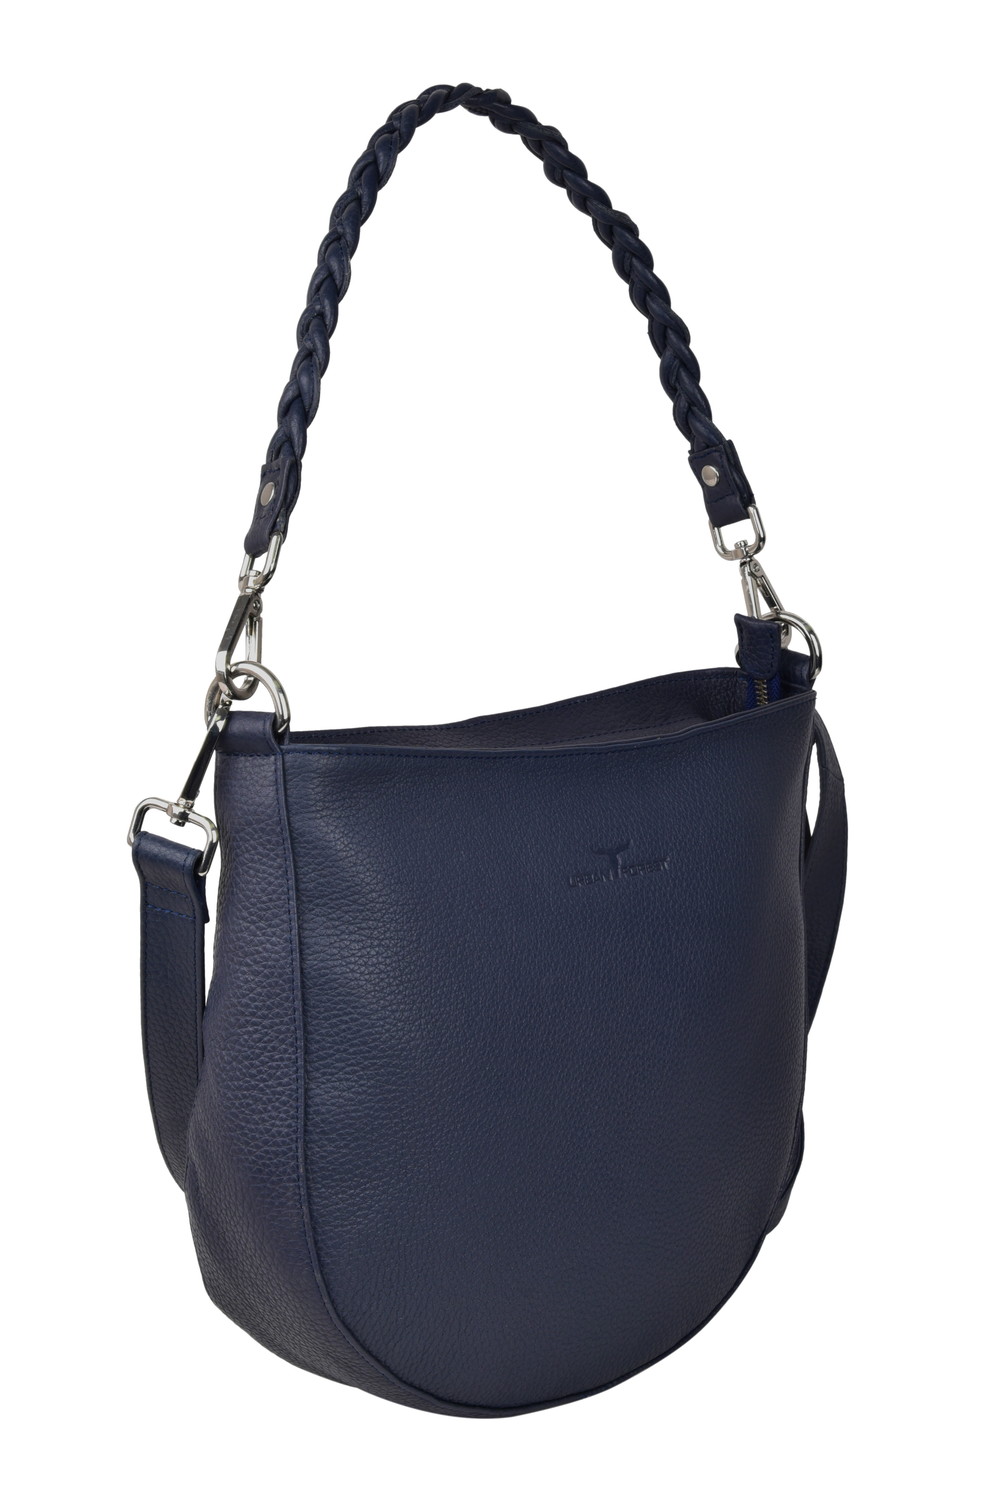 Diana Leather Handbag - Rambler Navy